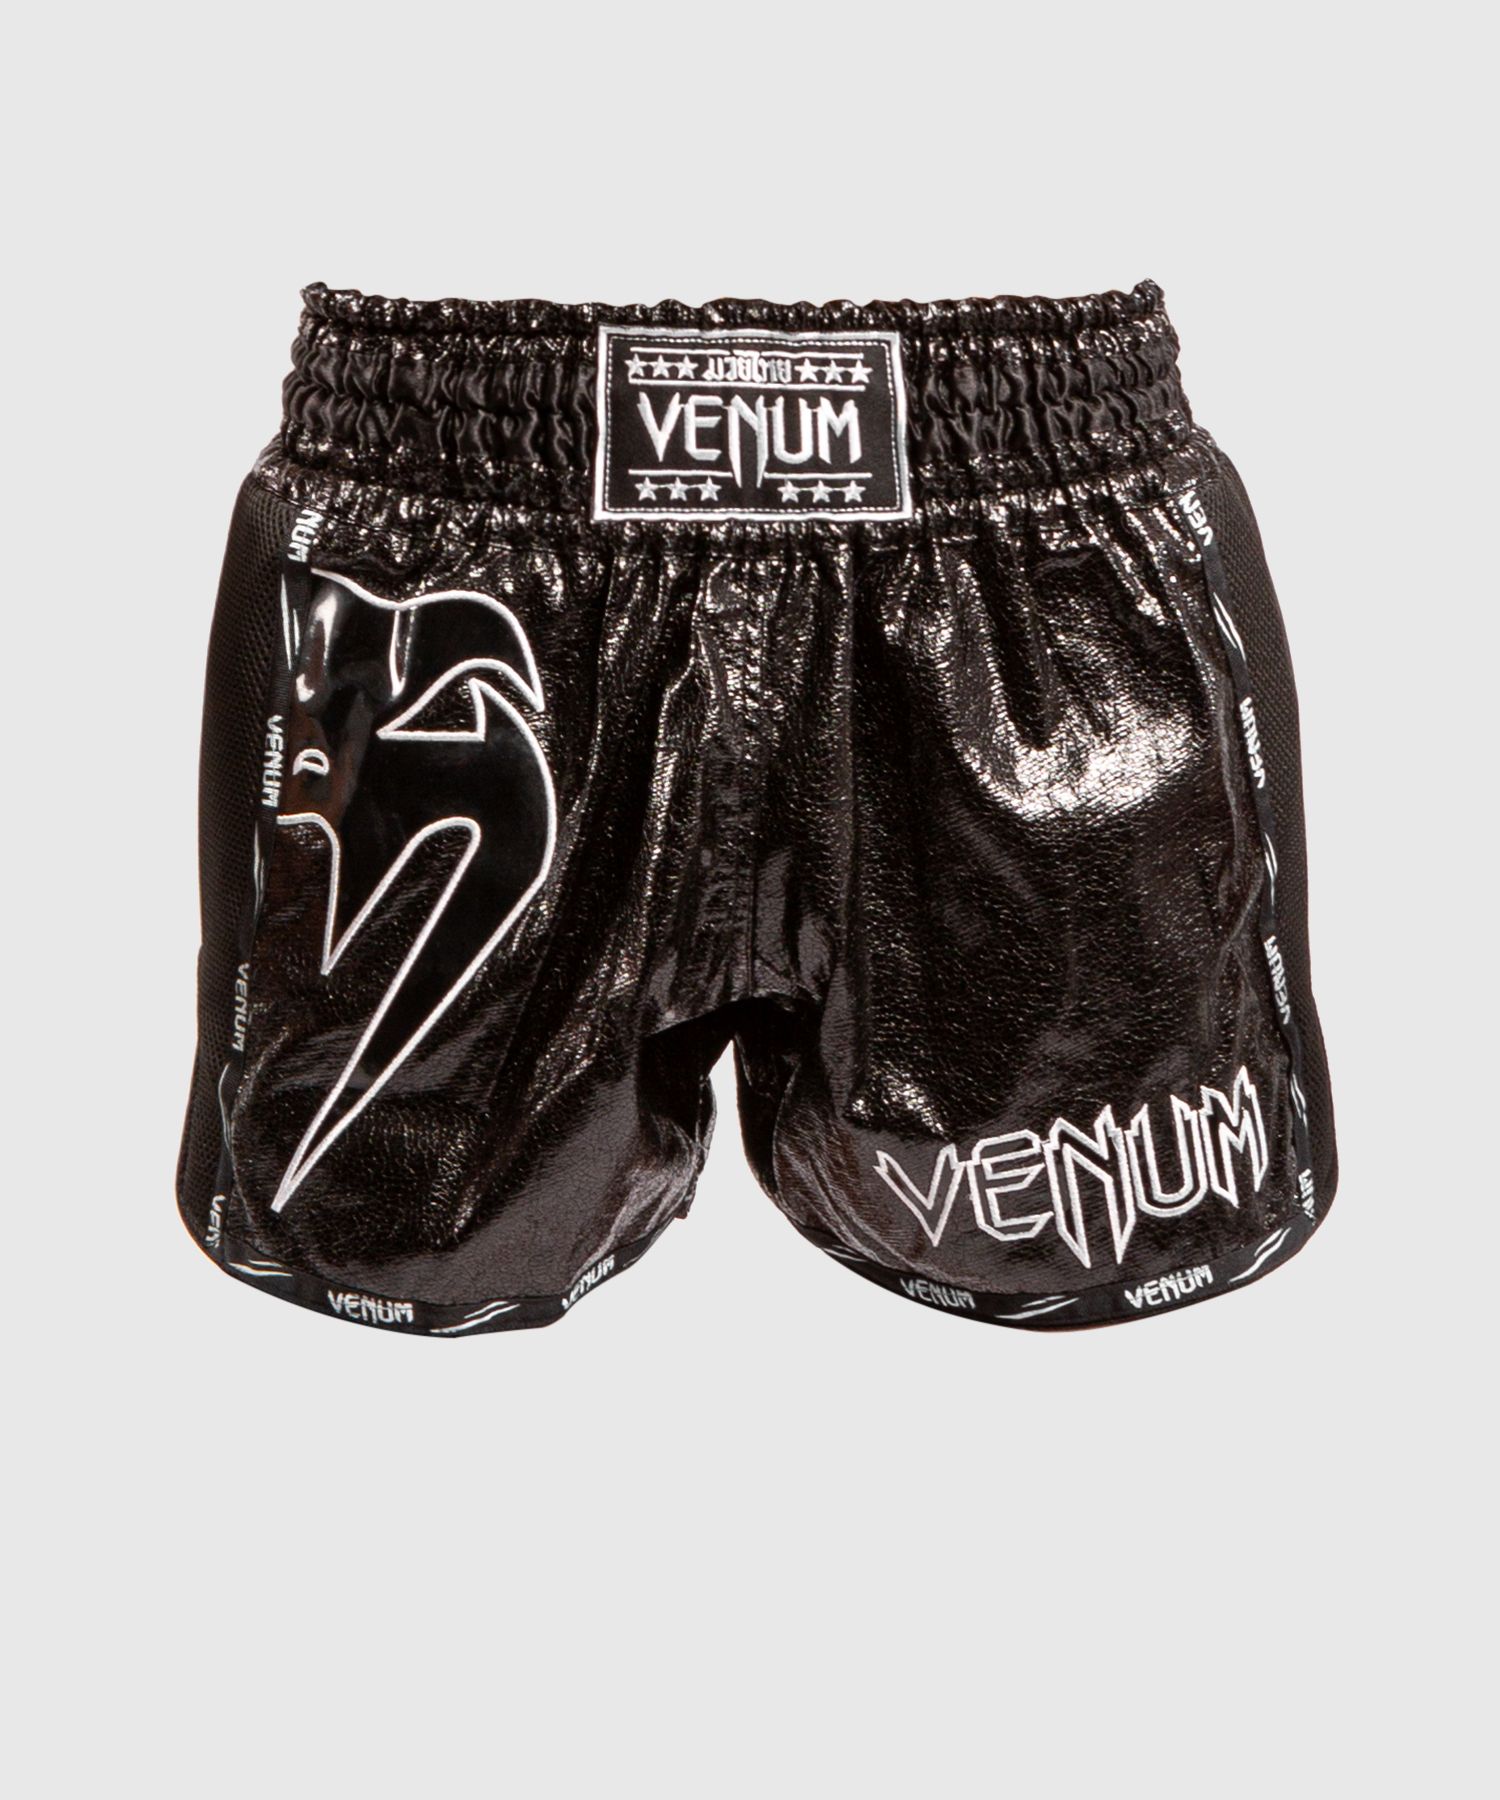 Pantalones de Muay Thai Venum Giant infinite - Negro/Negro